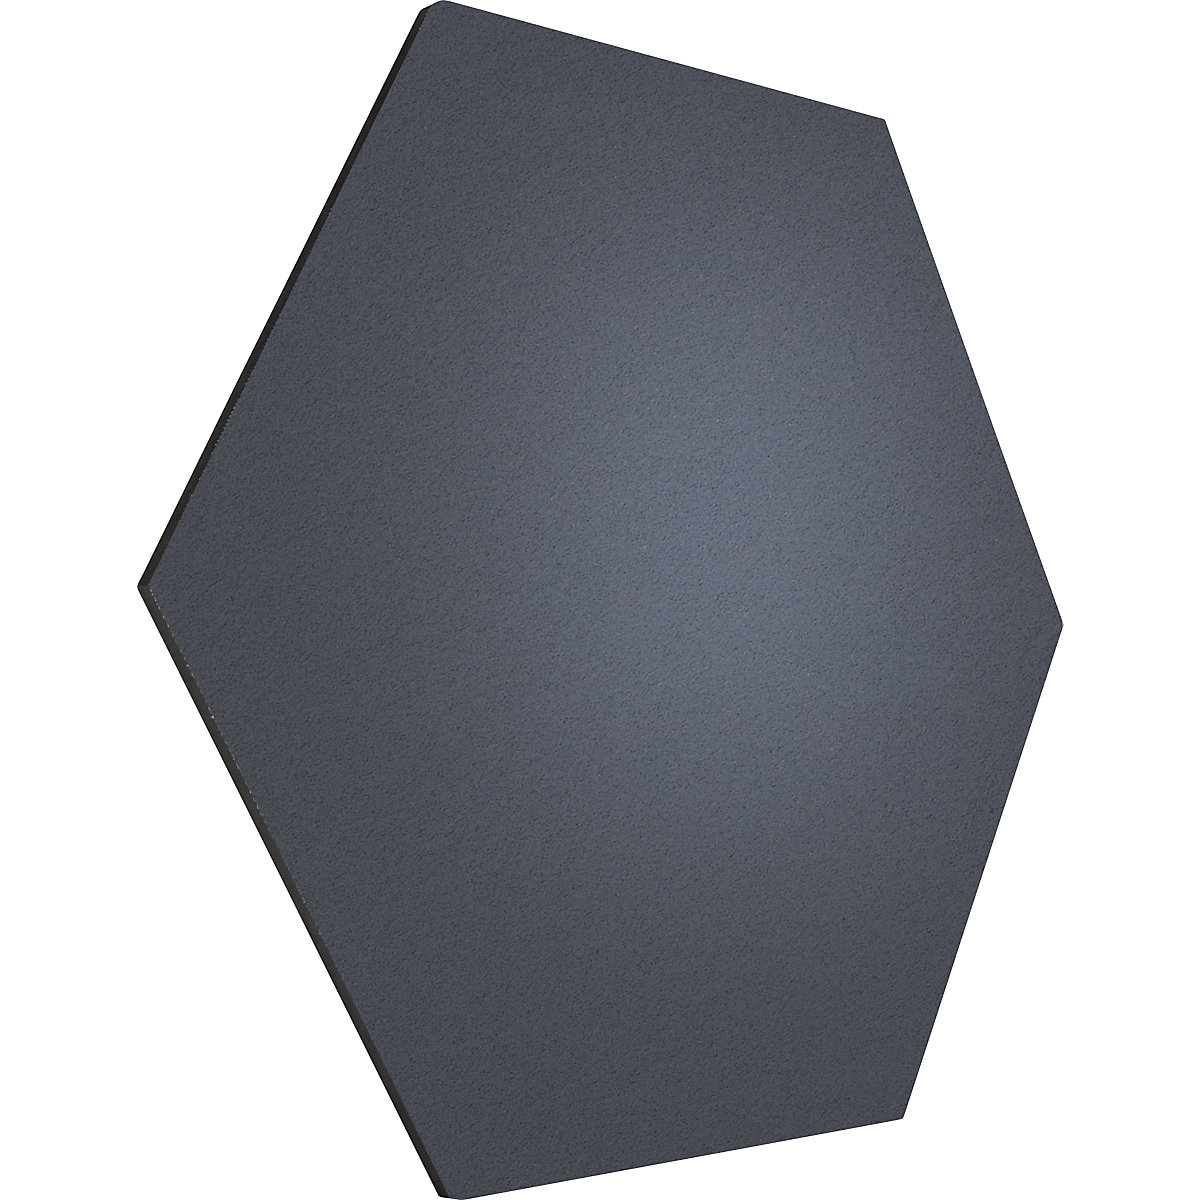 Tableau à épingles design hexagonal – Chameleon, liège, l x h 600 x 600 mm, anthracite-35